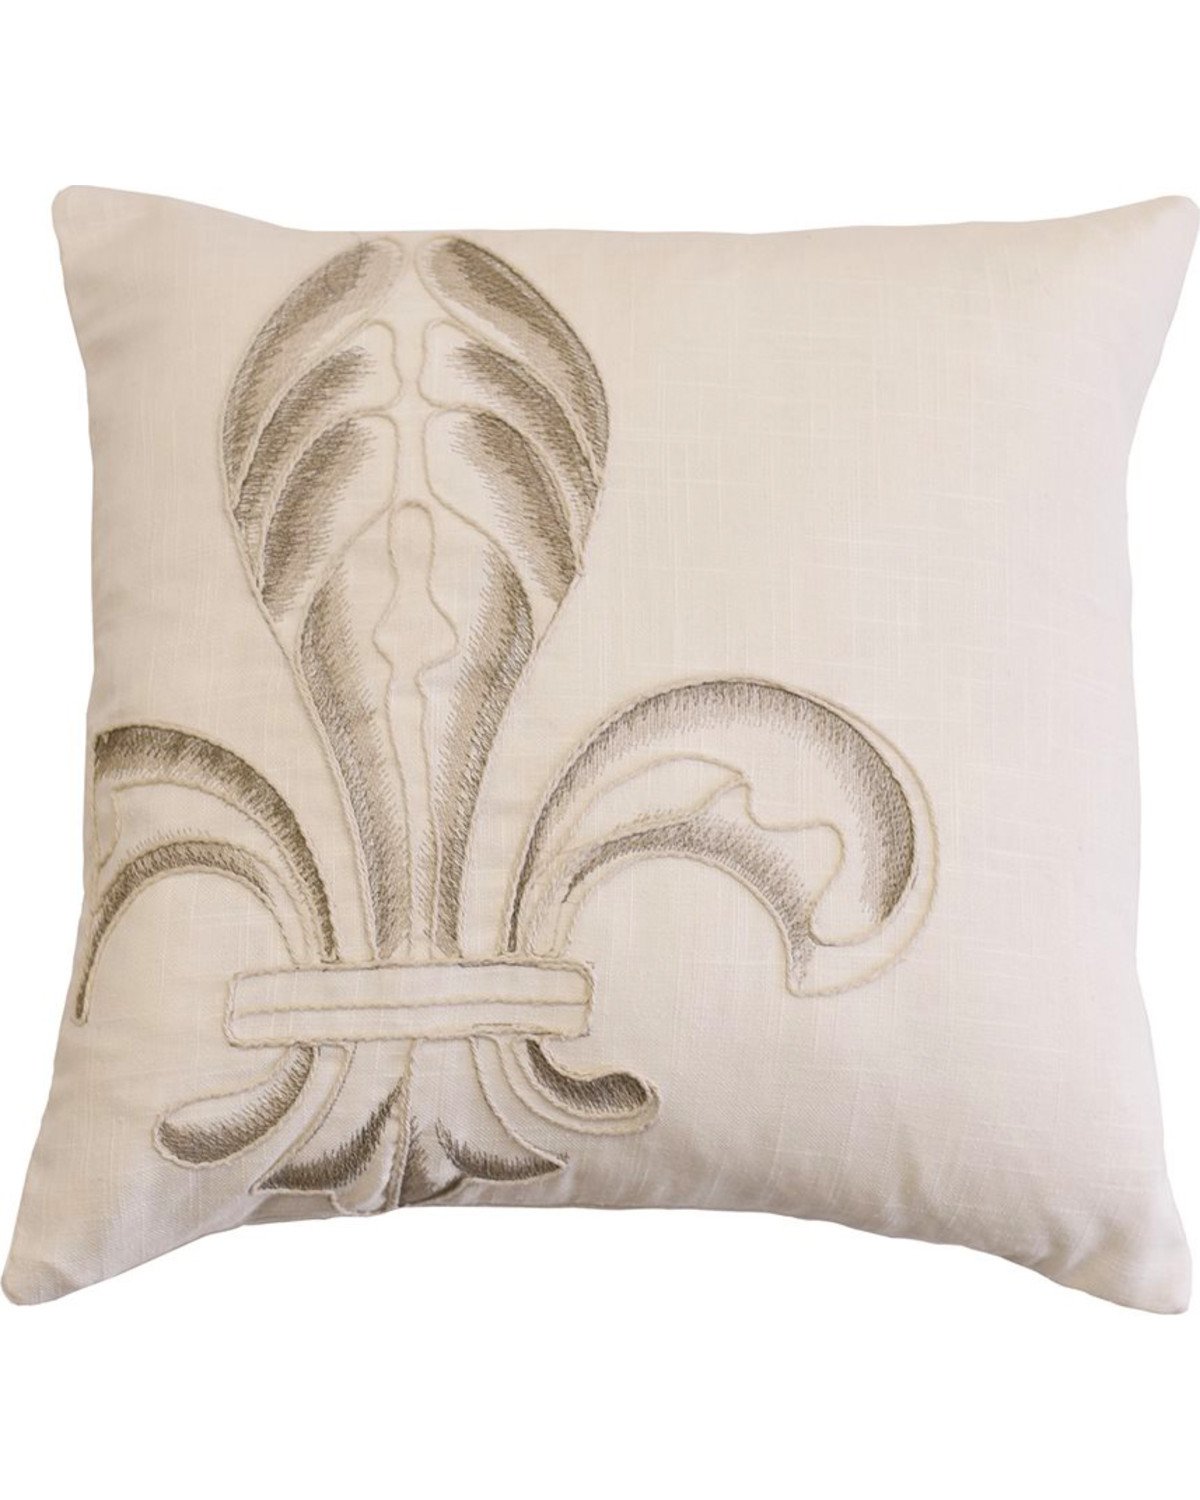 HiEnd Accents Fleur De Lis Embroidery Pillow